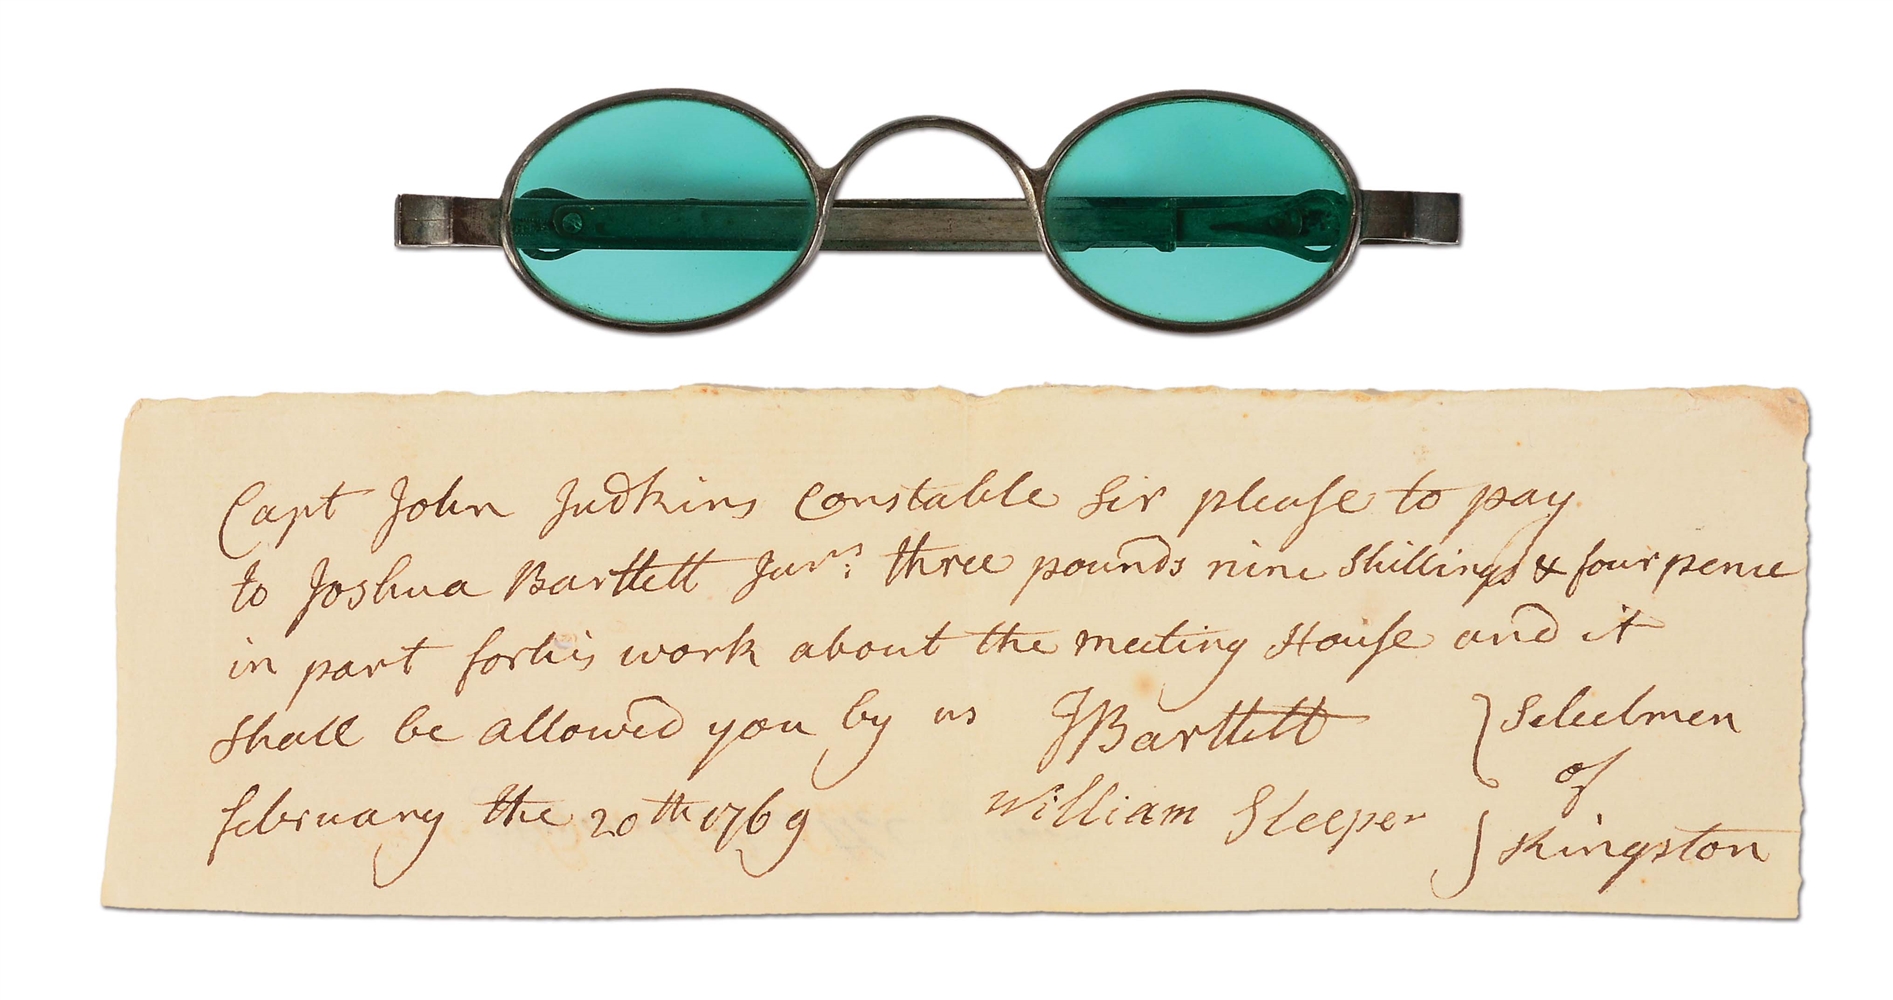 DECLARATION OF INDEPENDENCE SIGNER JOSIAH BARTLETT SIGNED LETTER AND GLASSES.